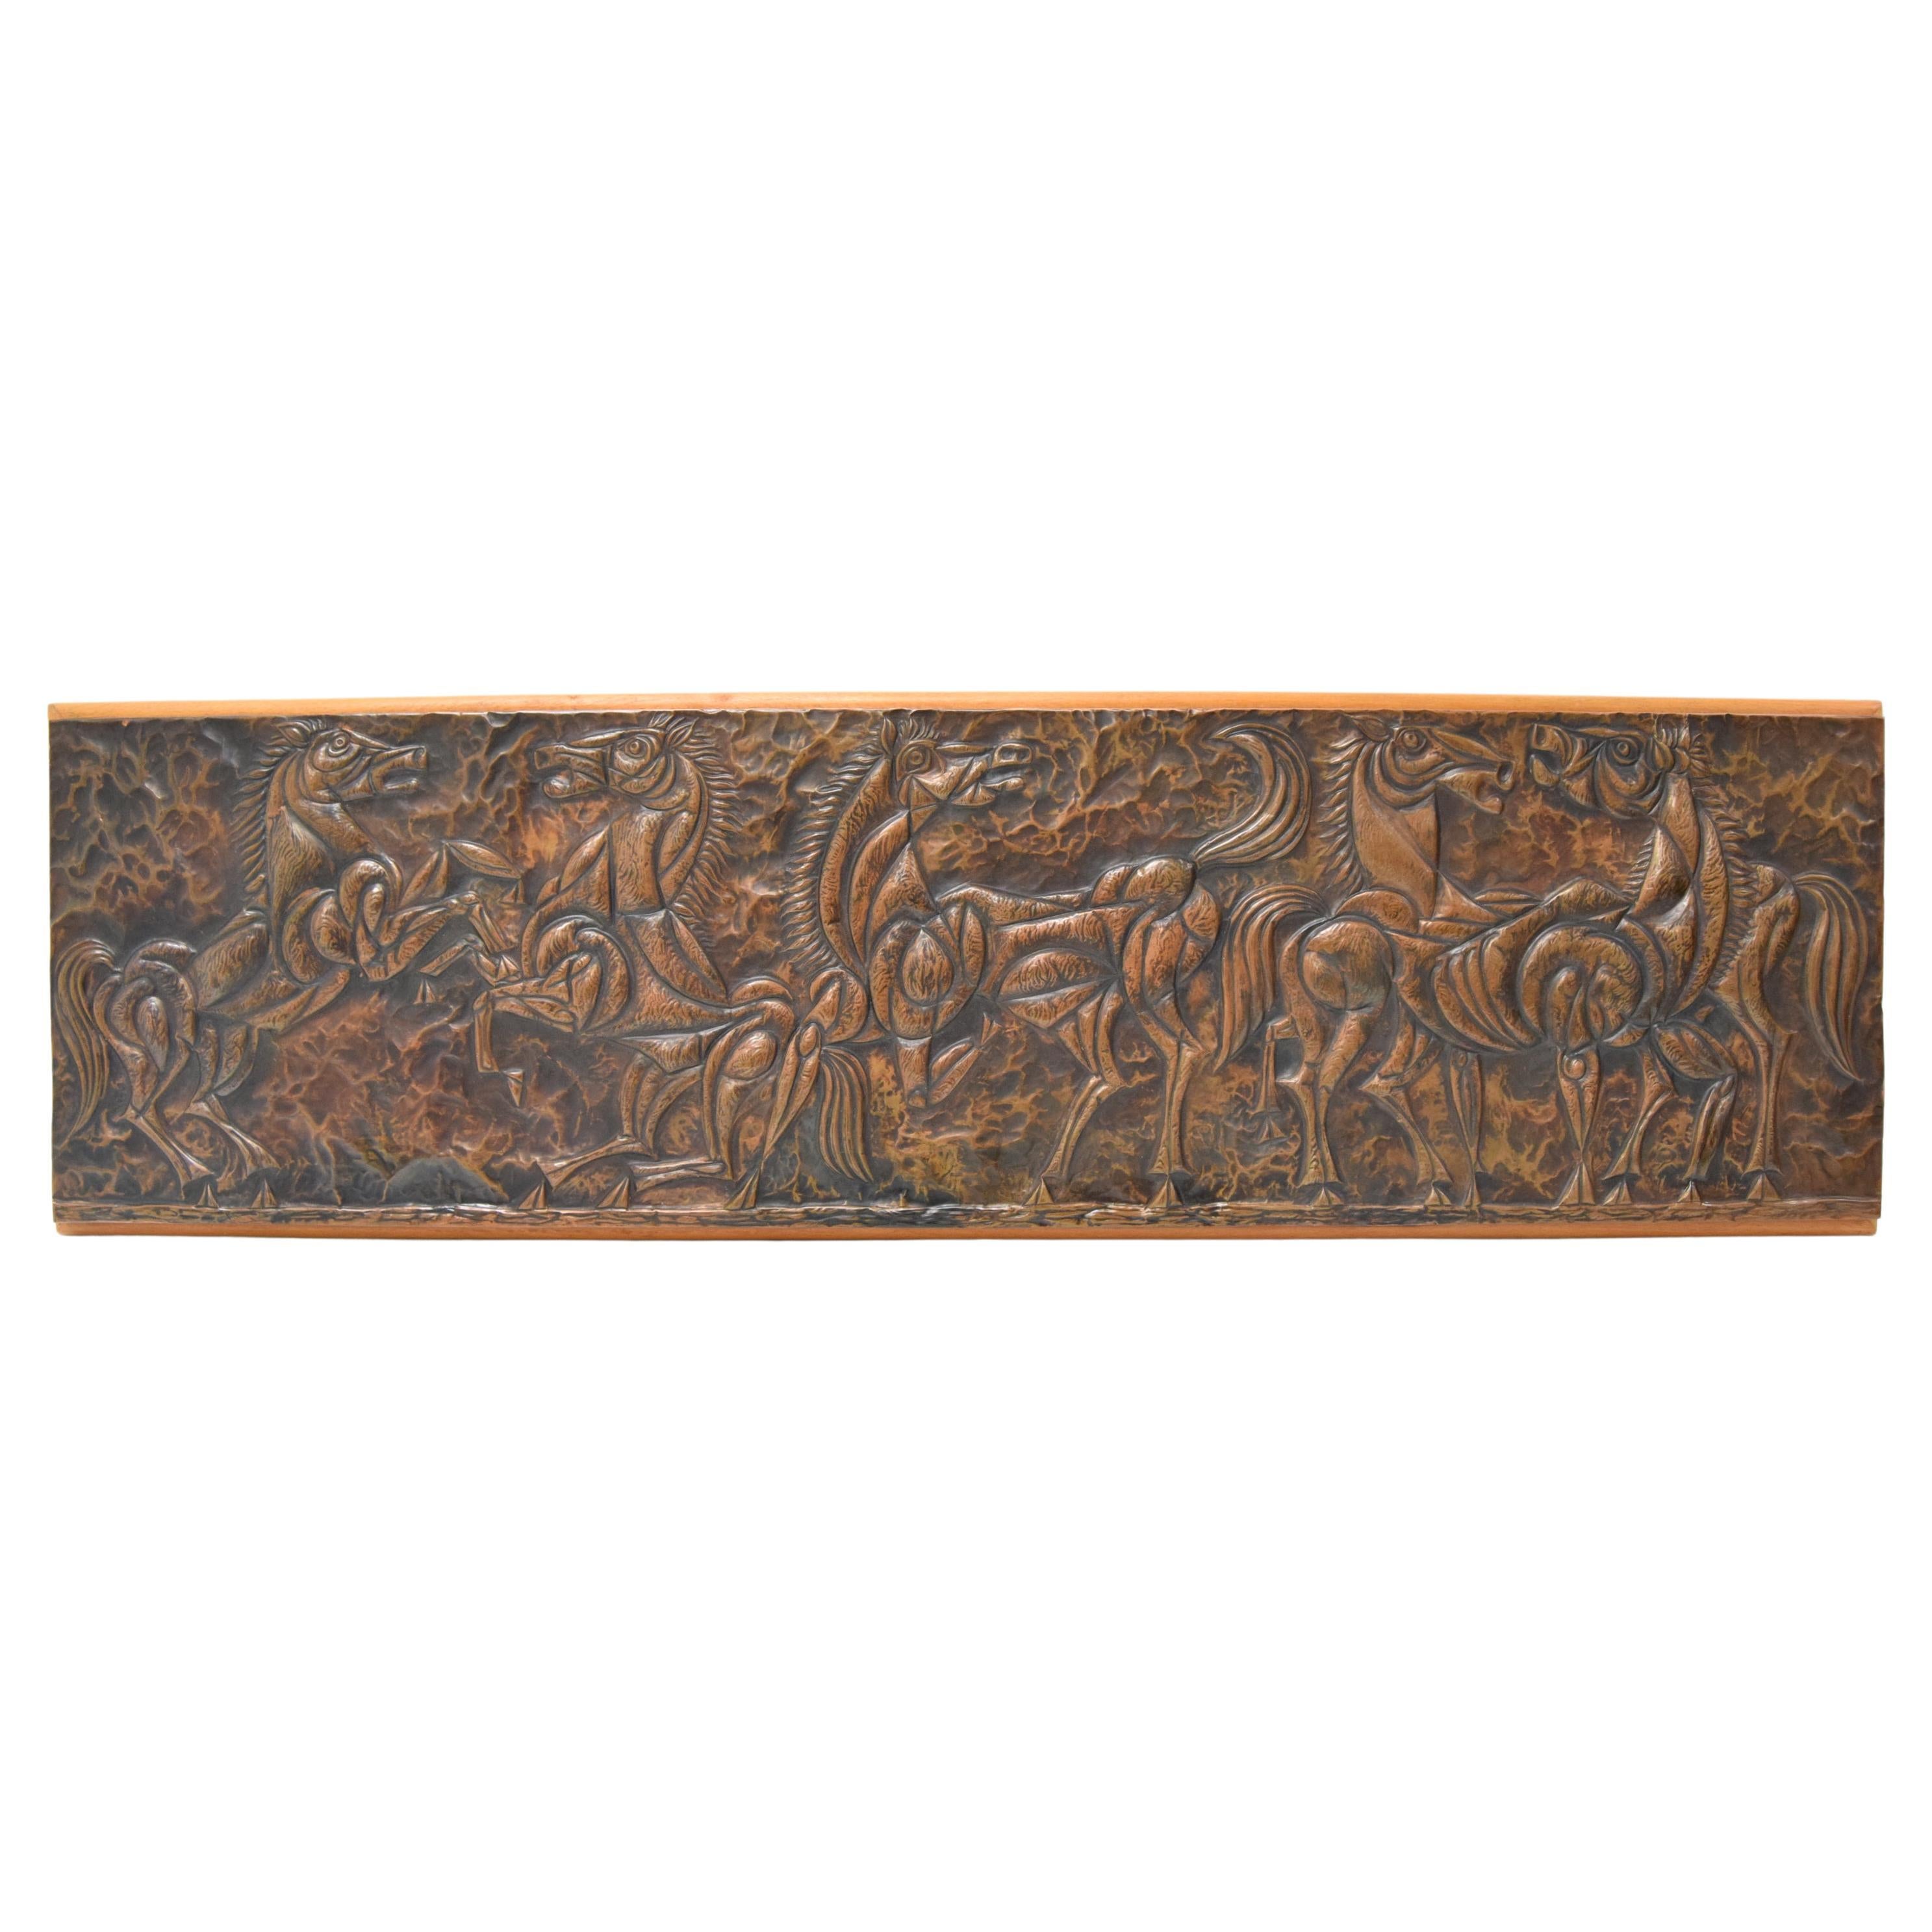 
Hergestellt aus Holz, Kupfer
Neu poliert
Mit gealterter Patina
Guter Originalzustand